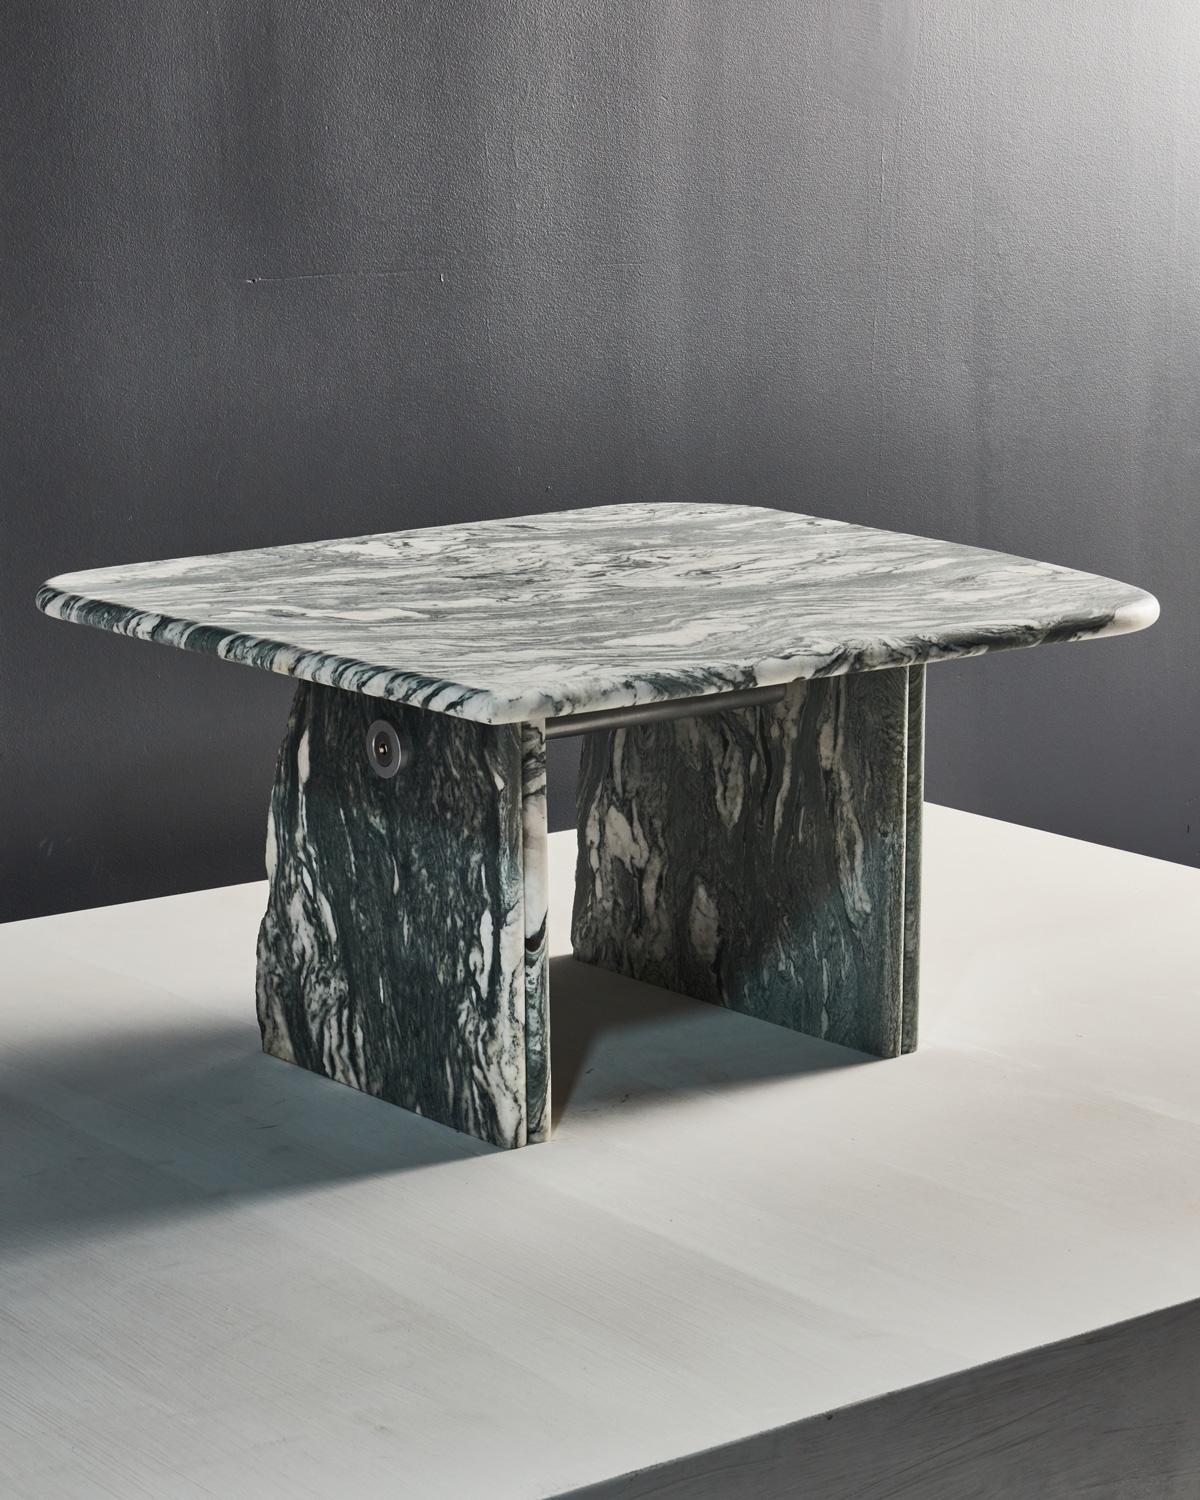 Chaque table Lino est une pièce unique qui célèbre la beauté de l'imperfection. Fabriqué en marbre de Cipollino, extrait des Alpes Apuanes dans le nord de l'Italie, son design distinctif met en valeur une fracture naturelle de la pierre. Juxtaposée